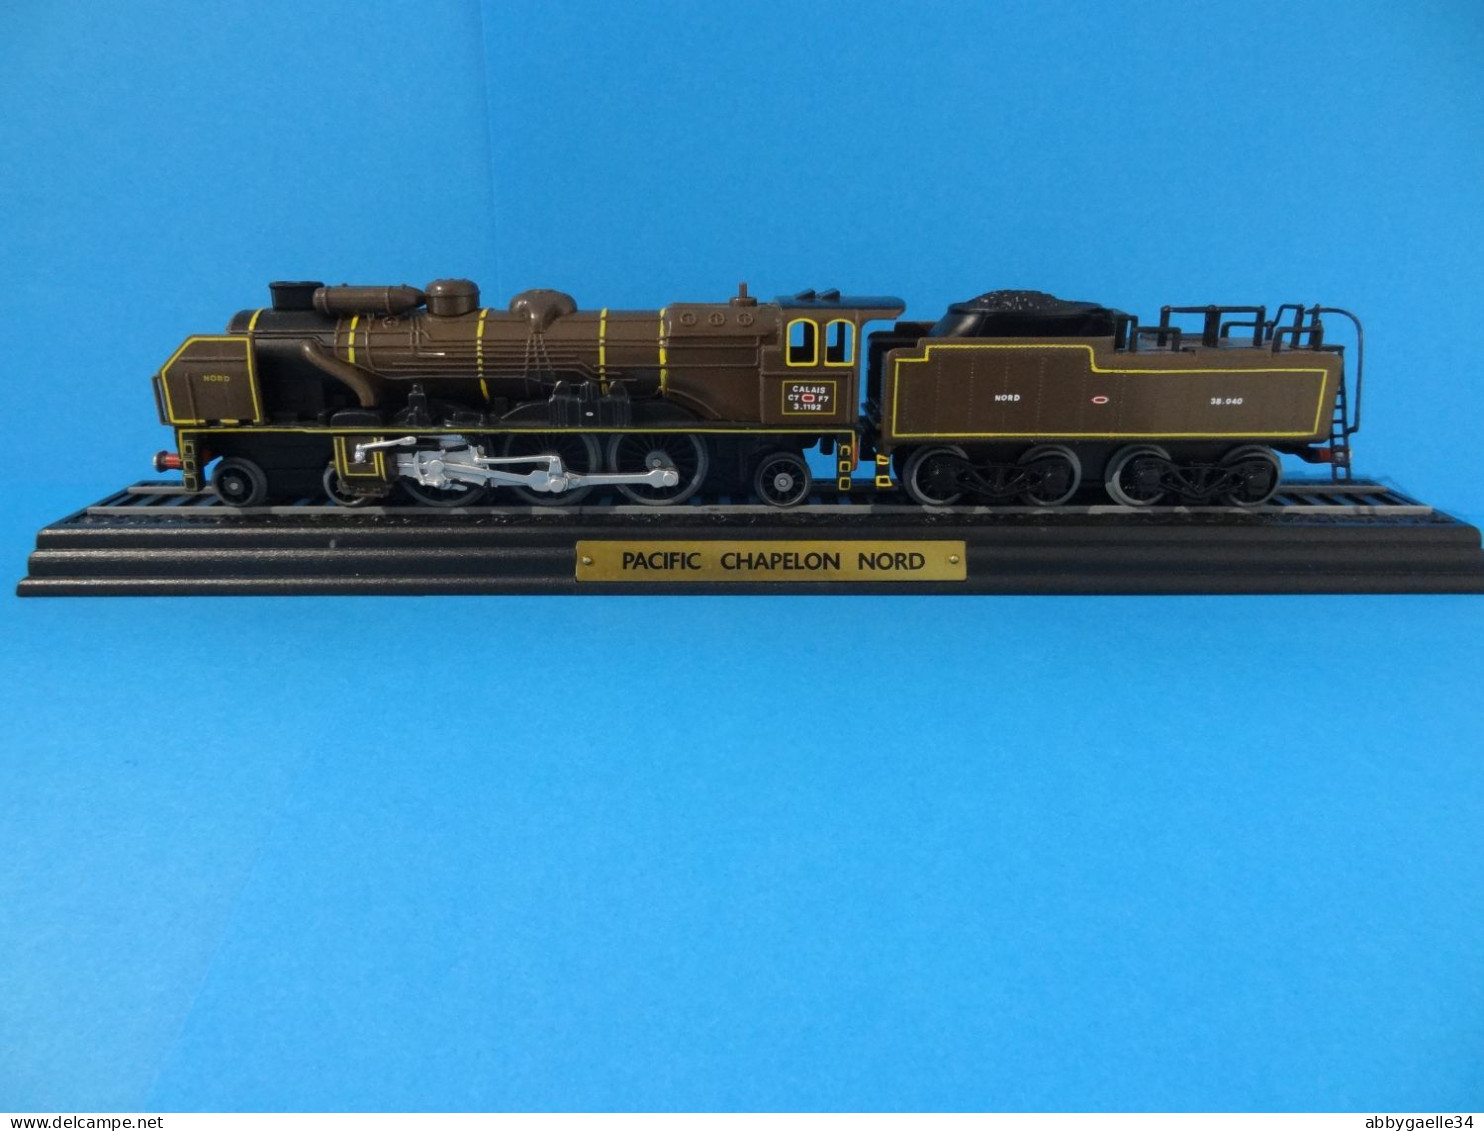 A saisir **Lot de 29 locomotives** en plastique édition HACHETTE voir description pour détail des modèles